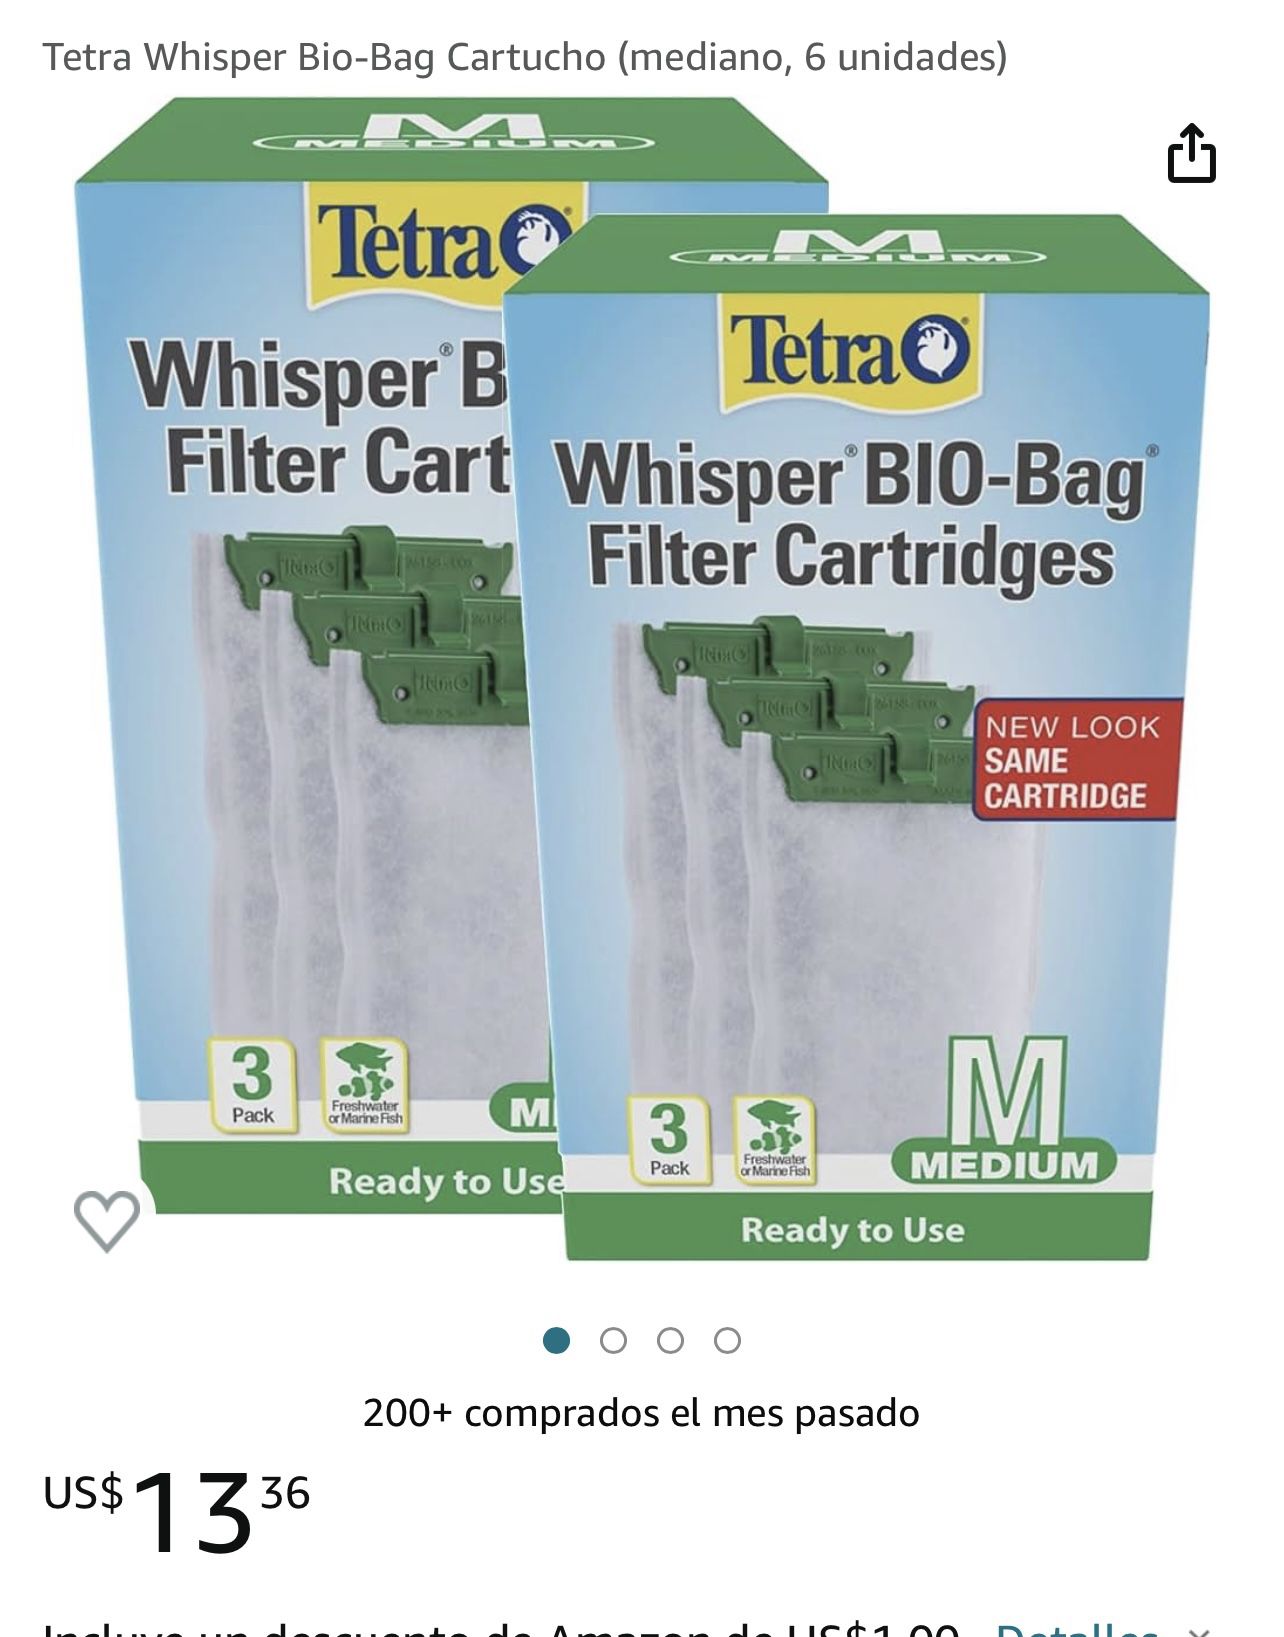 Whisper Bio-bag Filter Cartridges